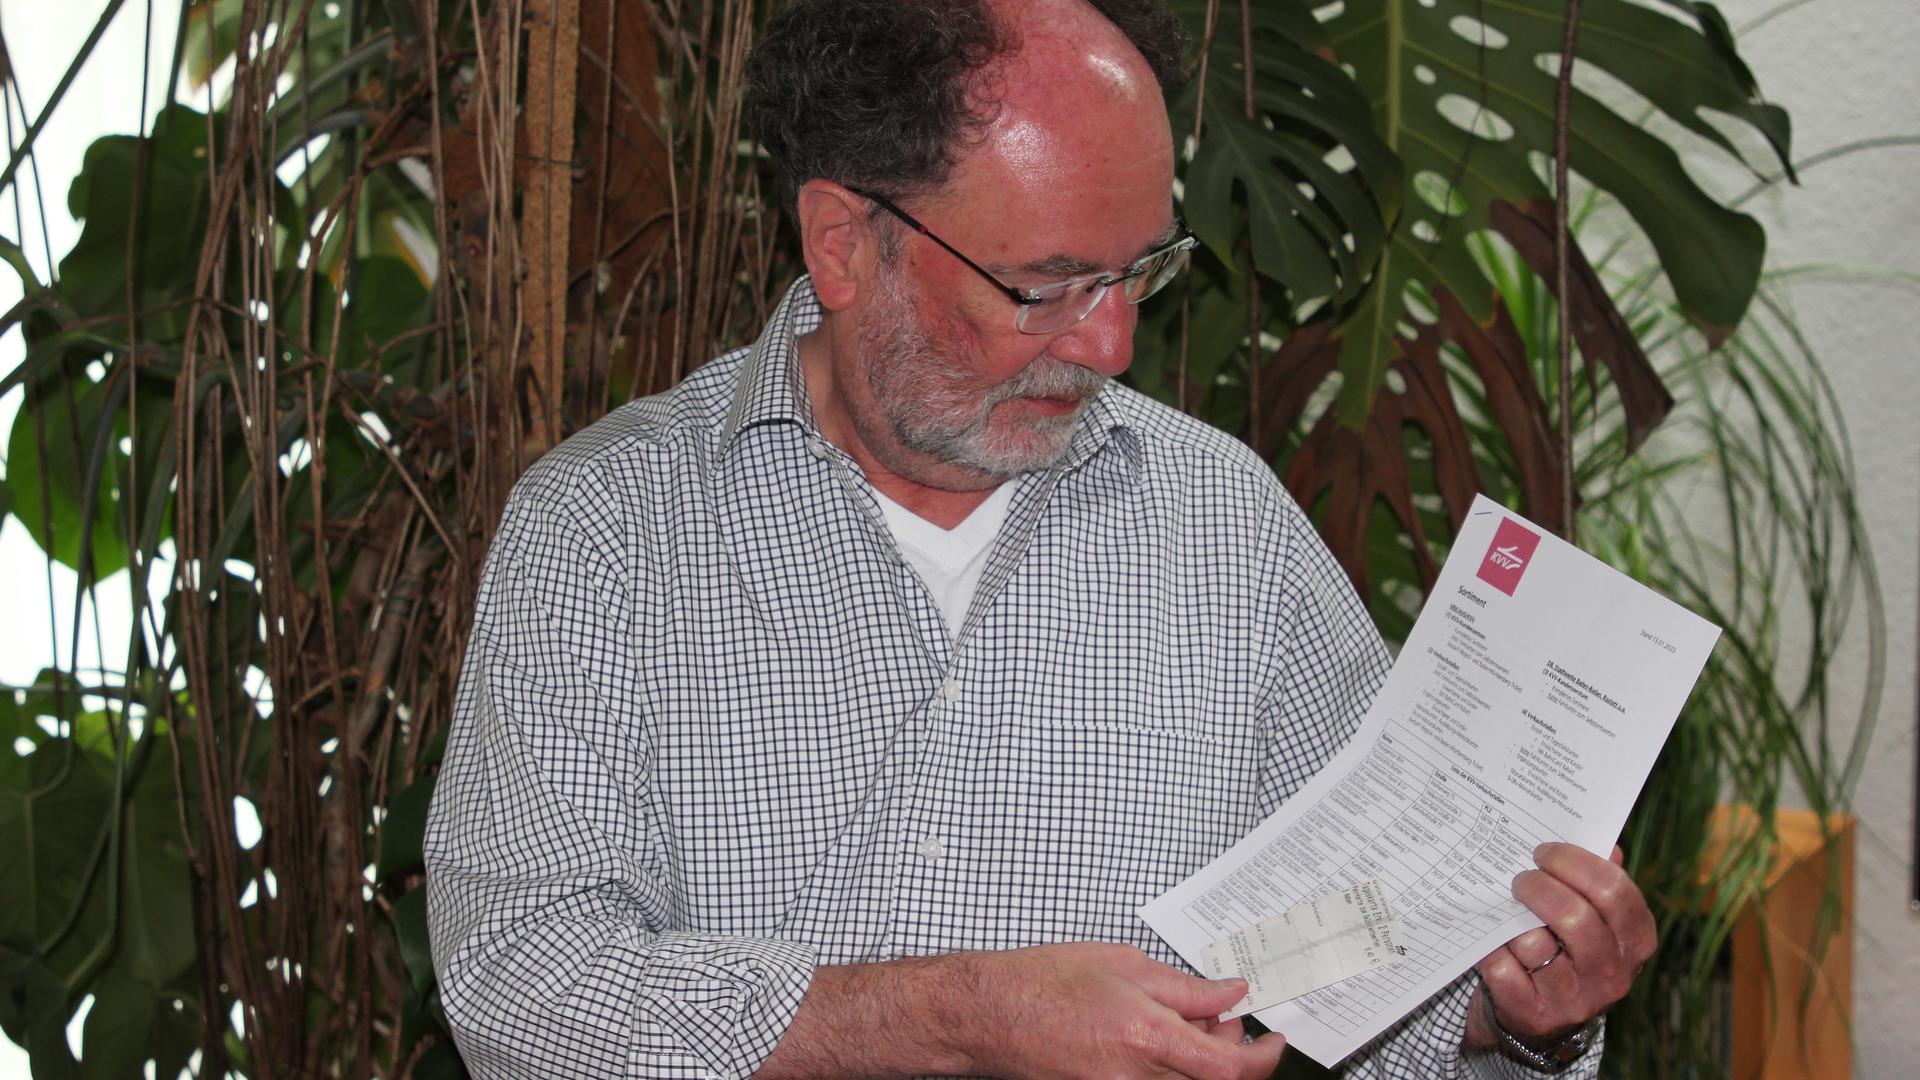 Fritz Liebersbach, Weingartener Ortsseniorenrat, studiert eine Liste der KVV-Verkaufsstellen.